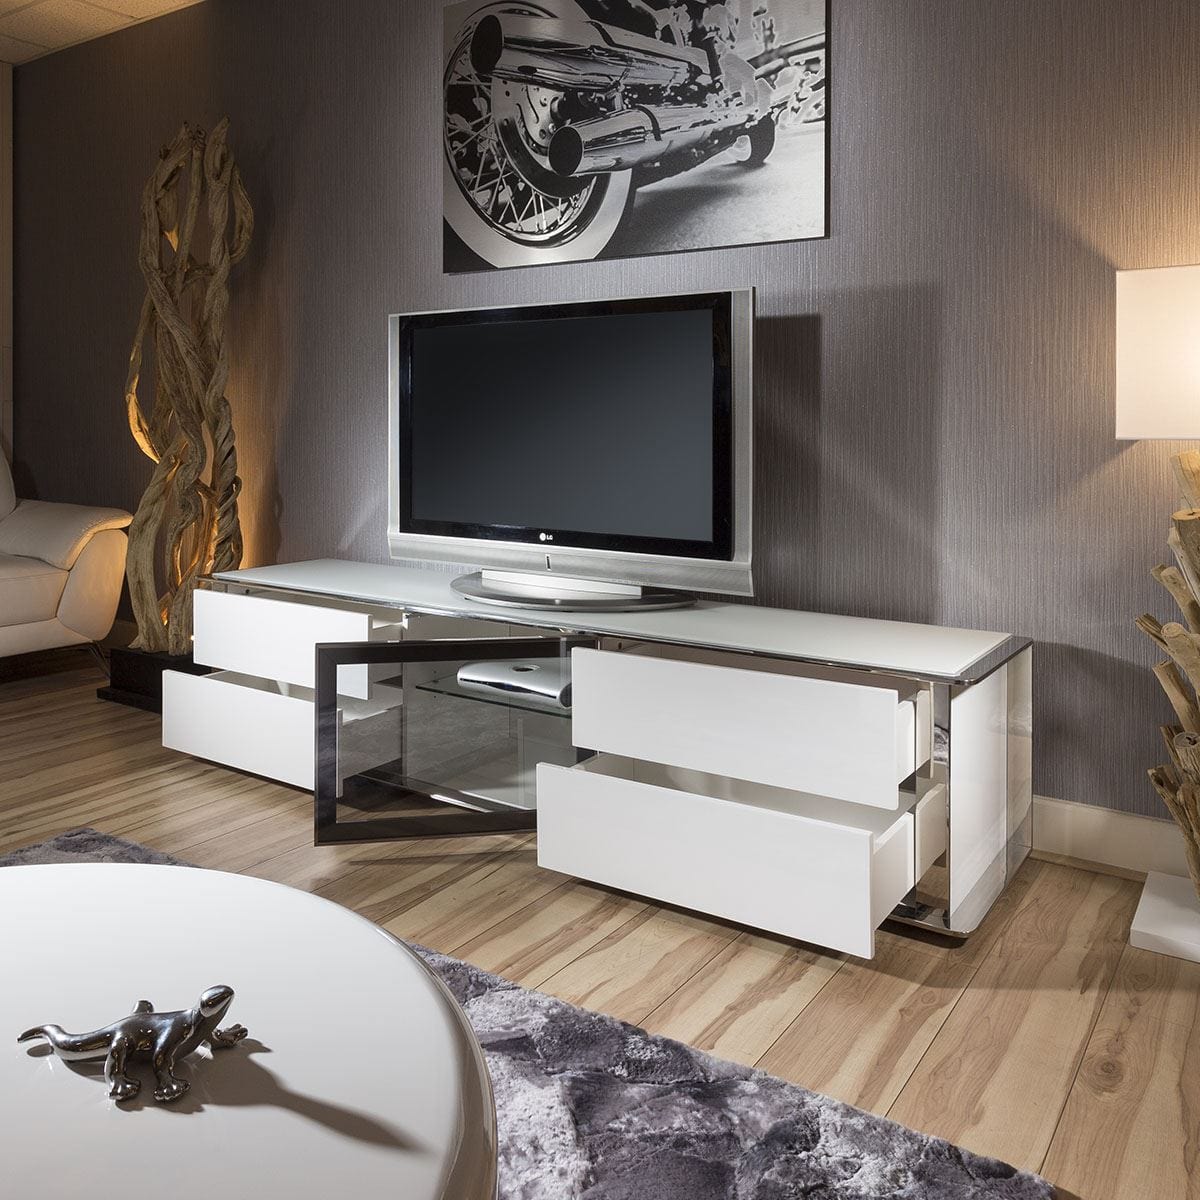 Quatropi Large TV Cabinet Stand White Gloss and Chrome Modern Quatropi 233 New